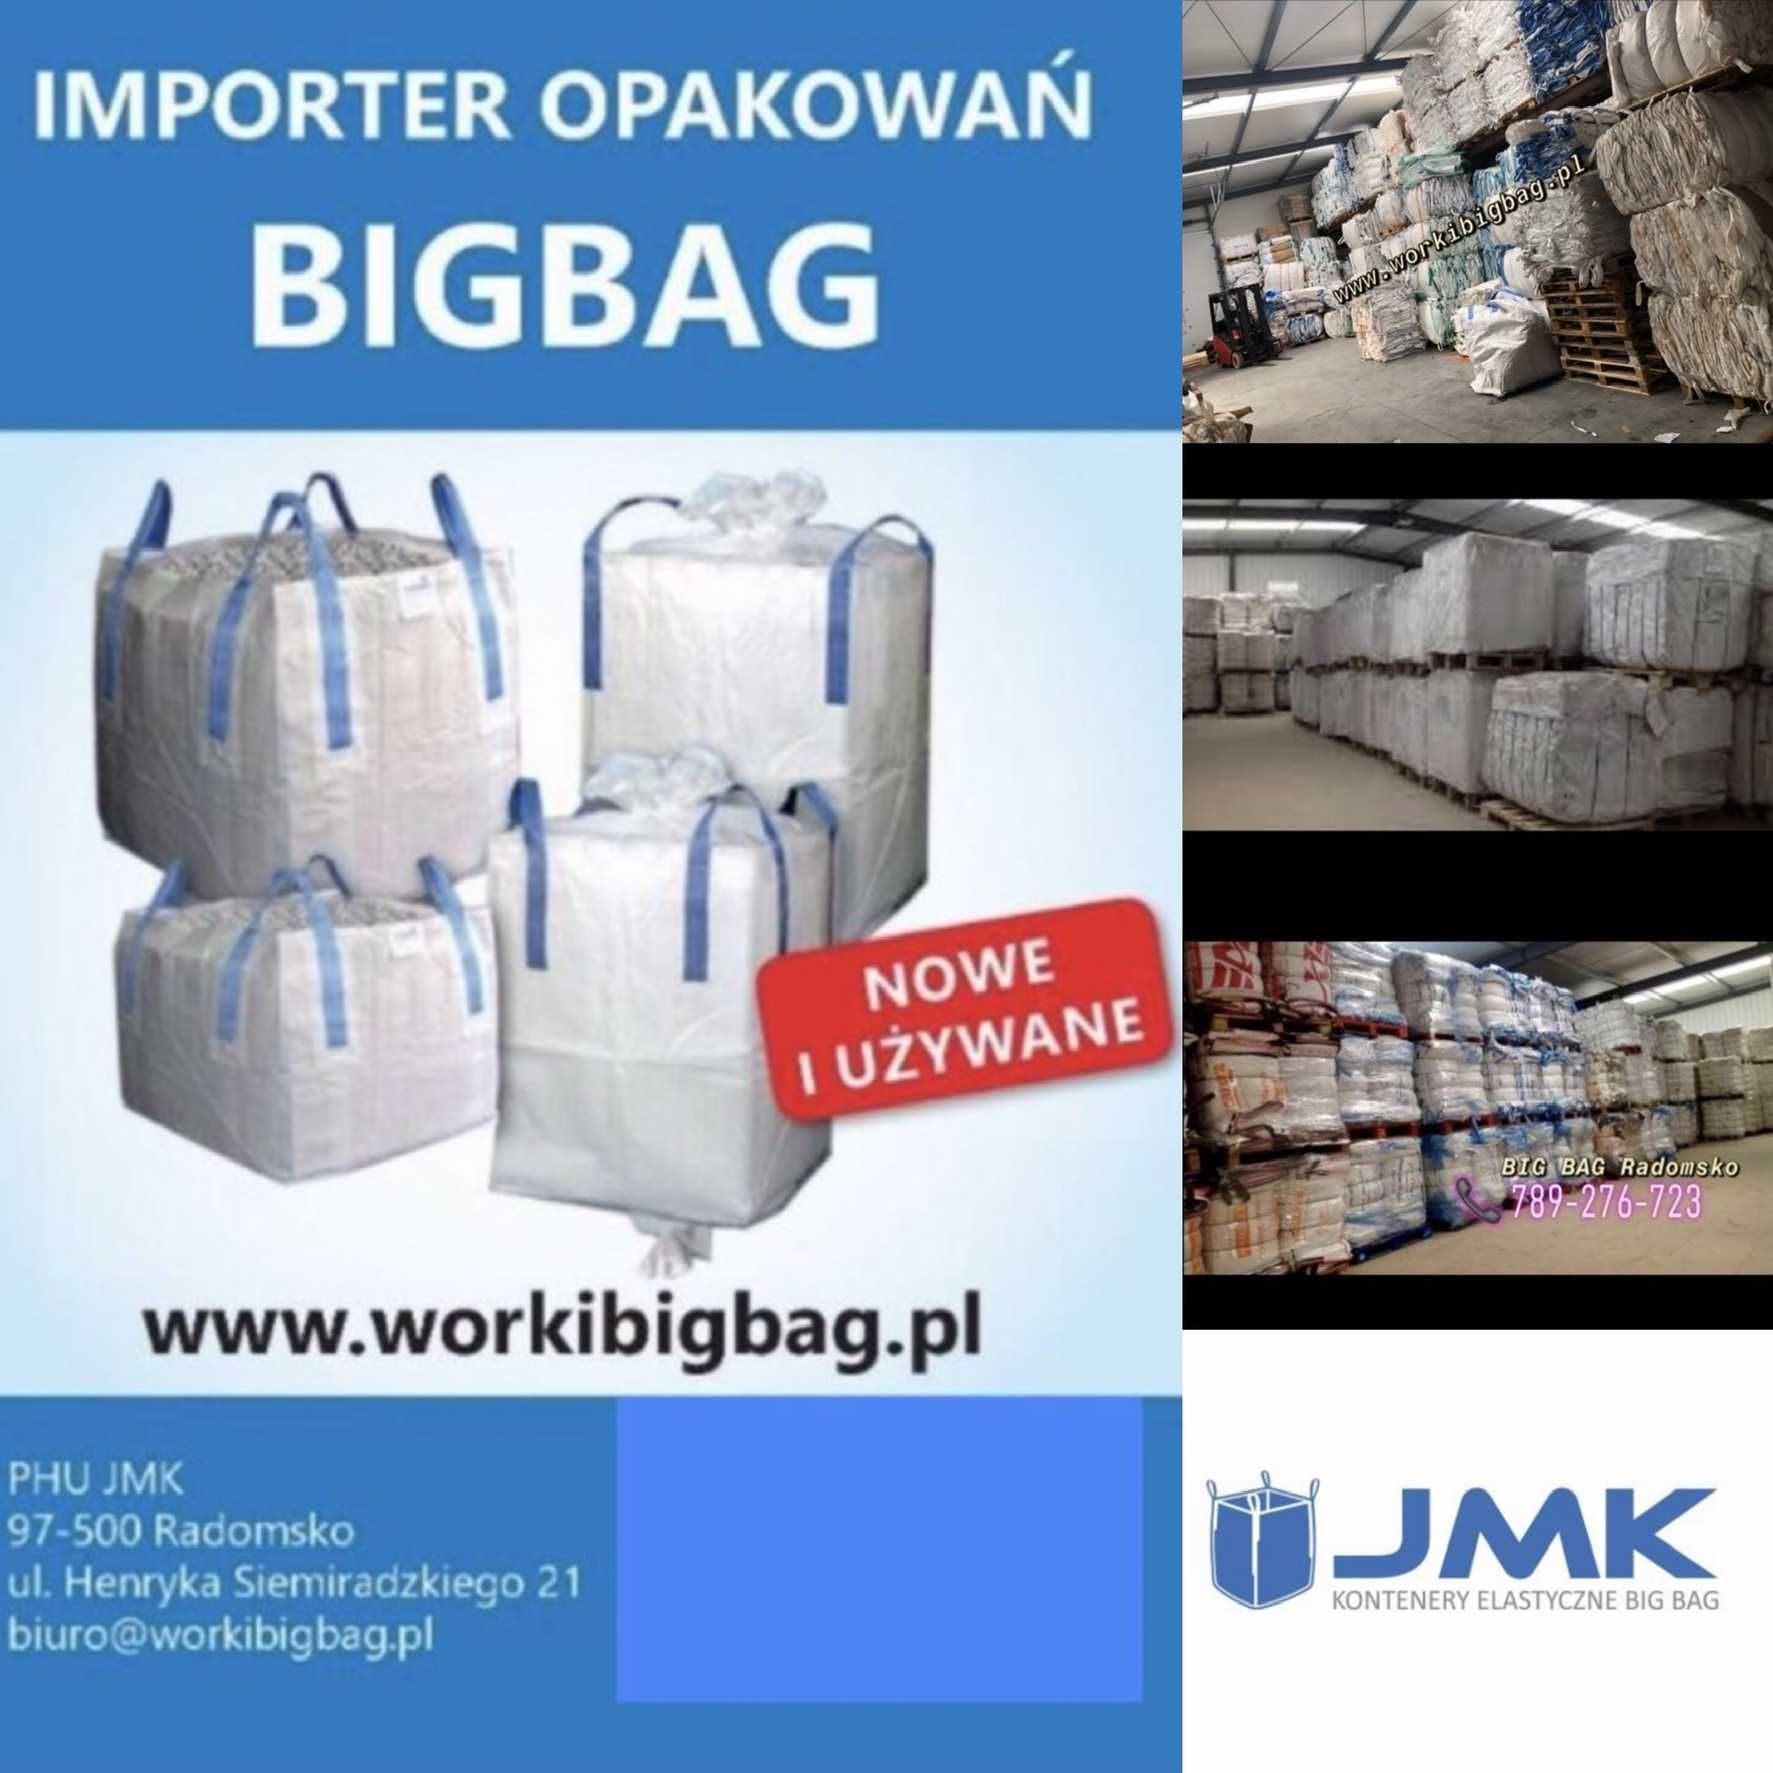 Worki Big Bag 140/90/90 NOWE Big Bag Bagi Wysyłka w 24h